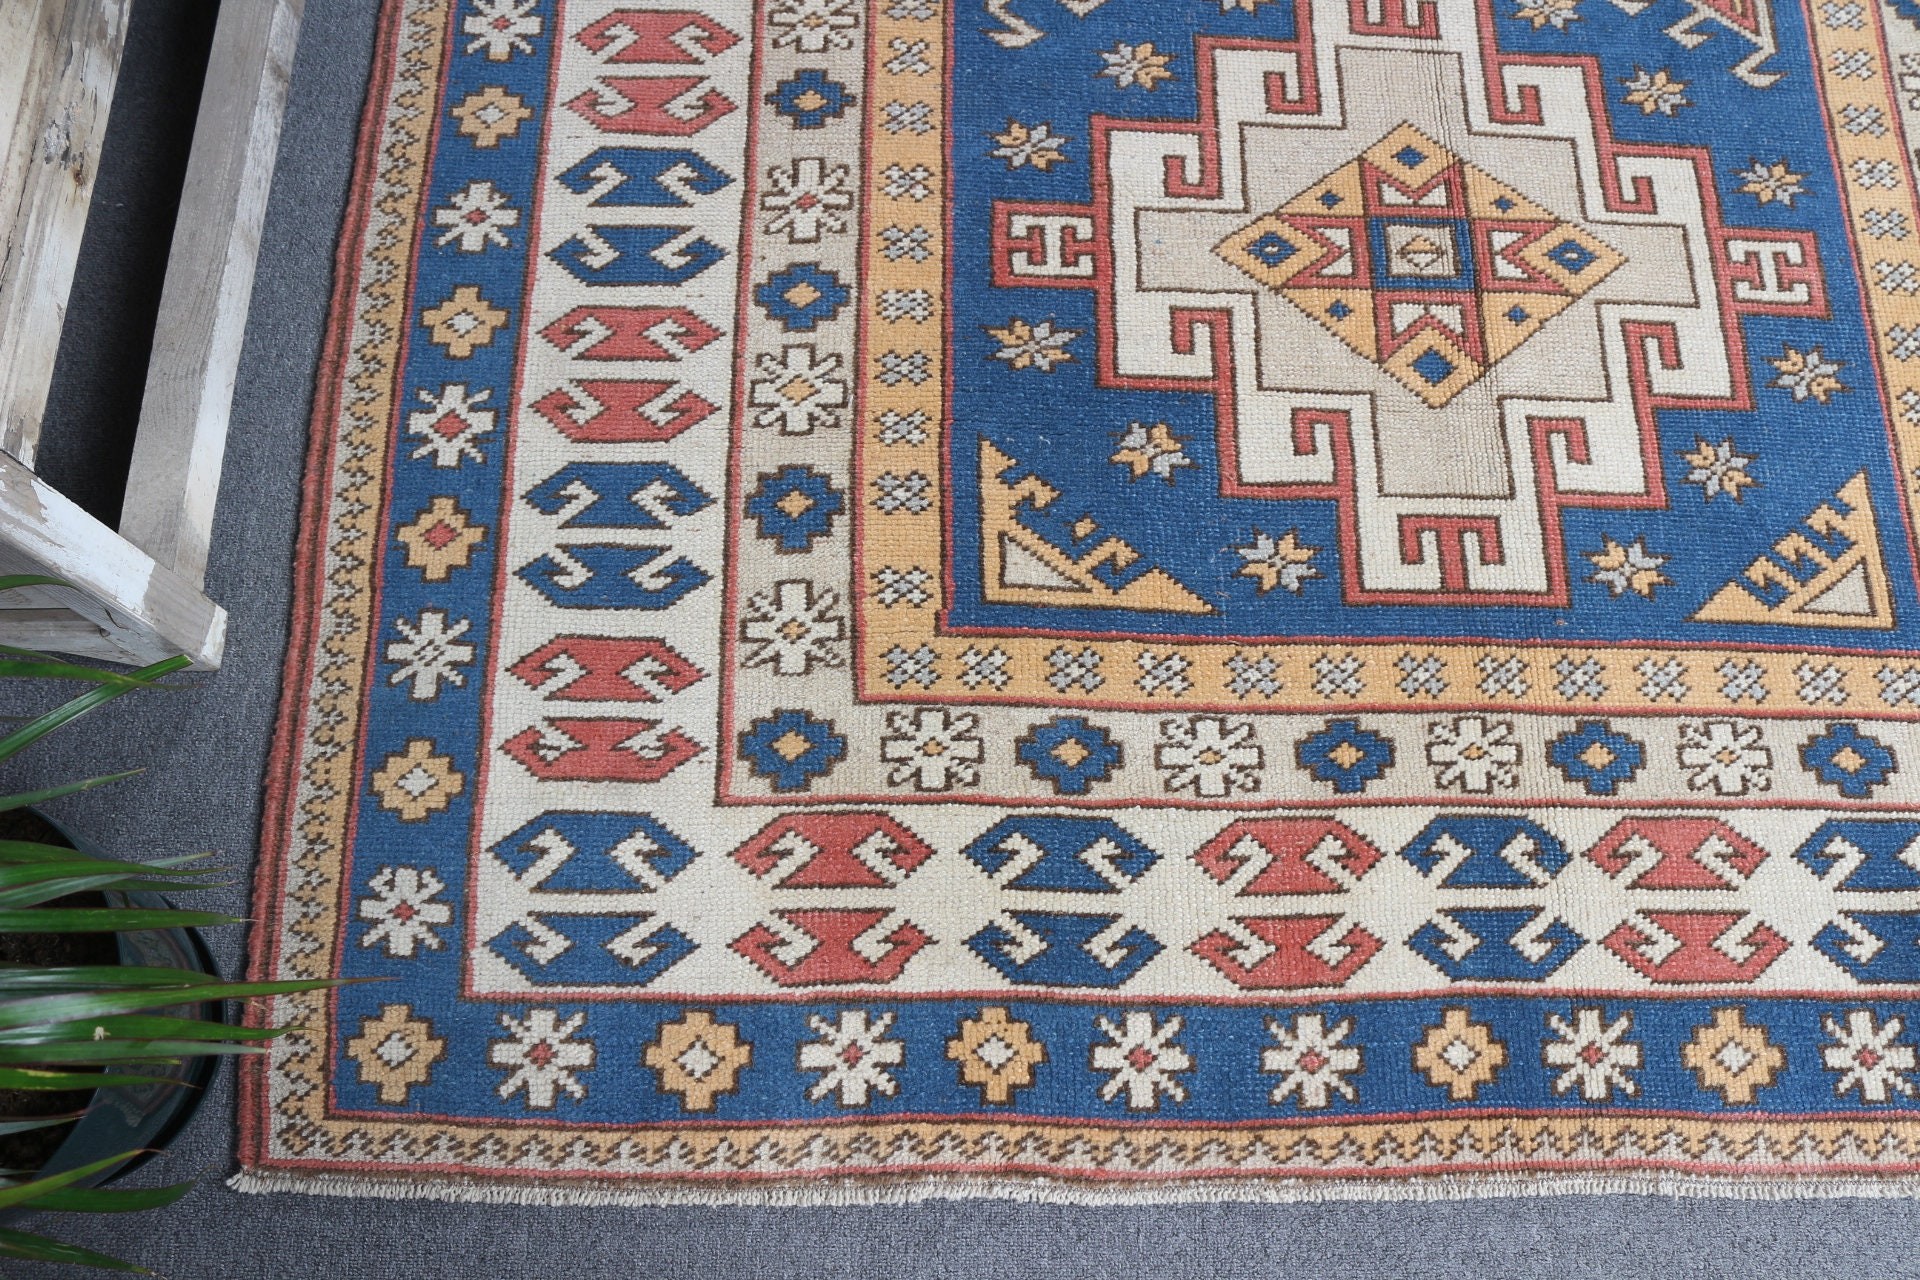 Anatolian Rugs, Living Room Rugs, Blue Kitchen Rug, 5.5x8.3 ft Large Rugs, Turkish Rugs, Floor Rugs, Bedroom Rug, Vintage Rug, Nomadic Rugs